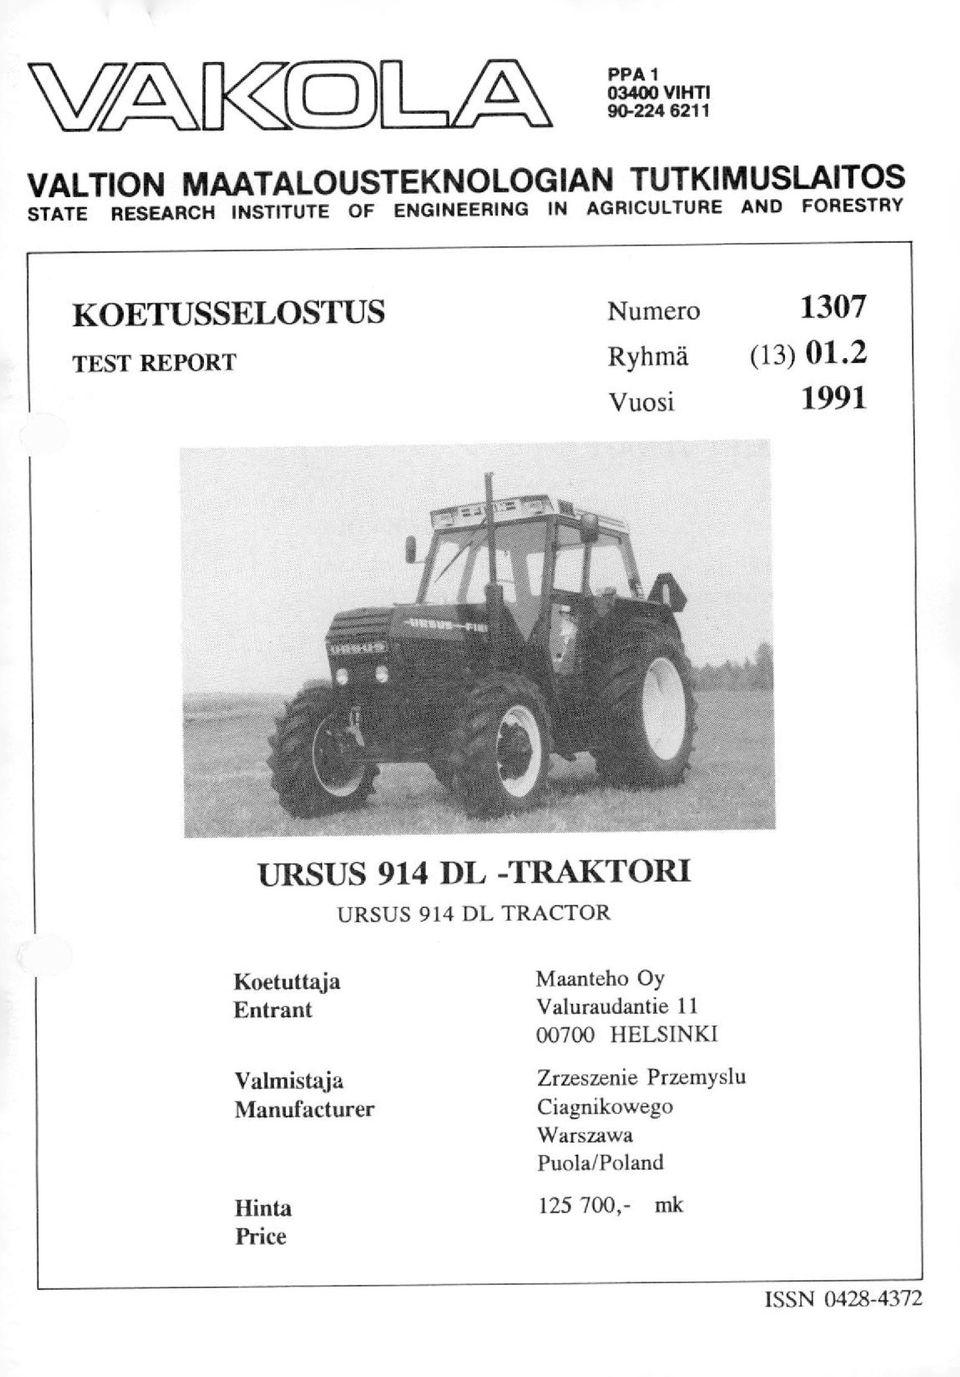 2 Vuosi 1991 URSUS 914 DL -TRAKTORI URSUS 914 DL TRACTOR Koetuttaja Entrant Valmistaja Manufacturer Hinta Price